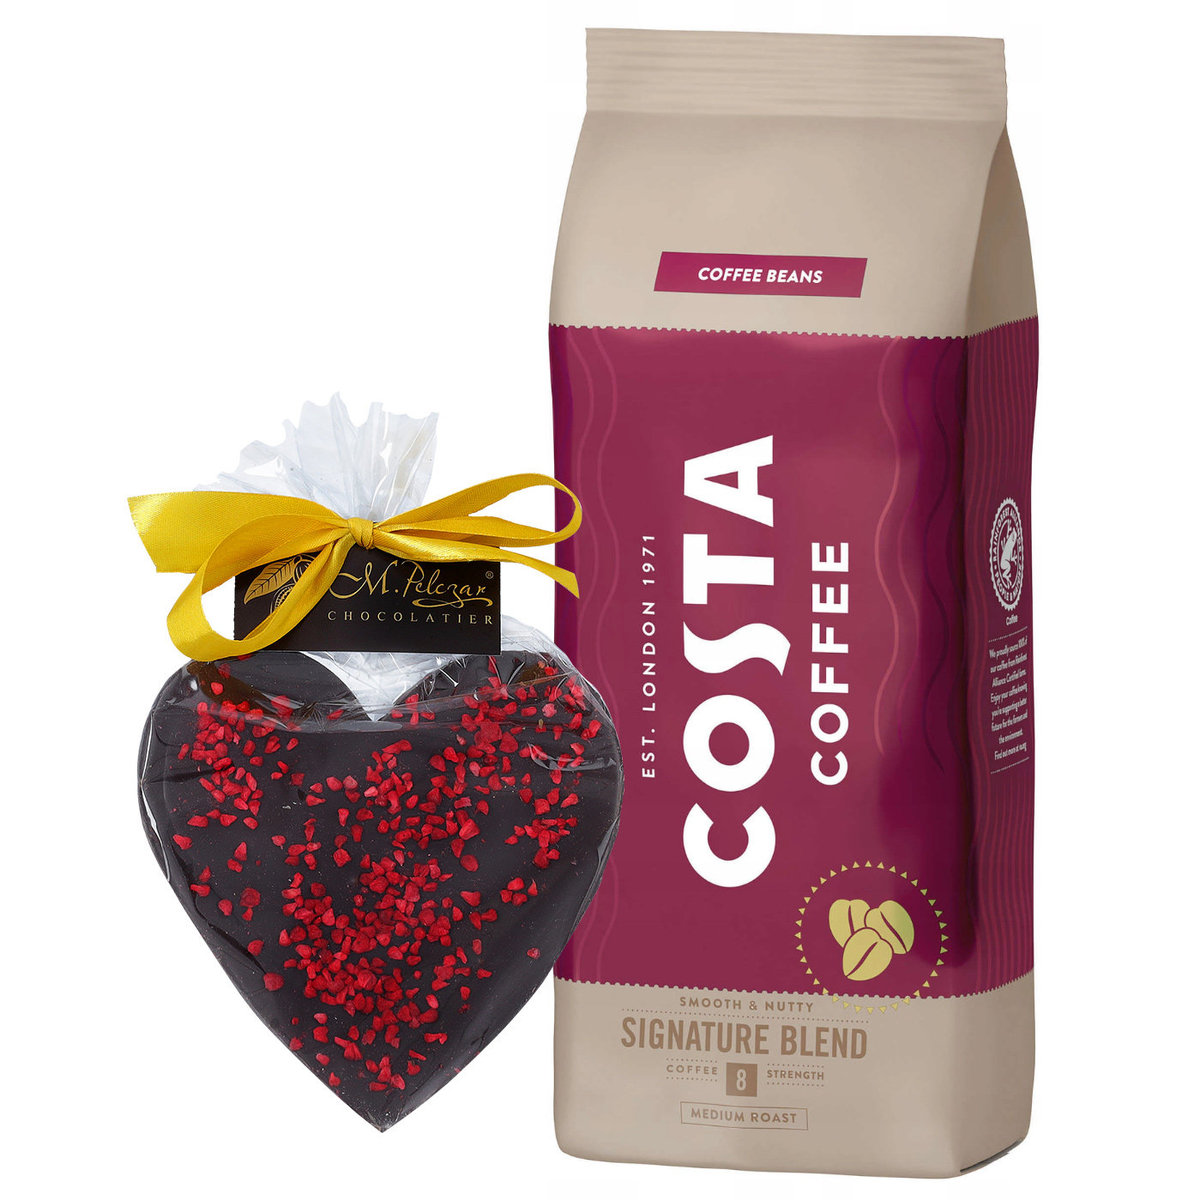 Kawa ziarnista Costa Coffee Signature Blend 1kg + PREZENT Serce z gorzkiej czekolady M.Pelczar Chocolatier